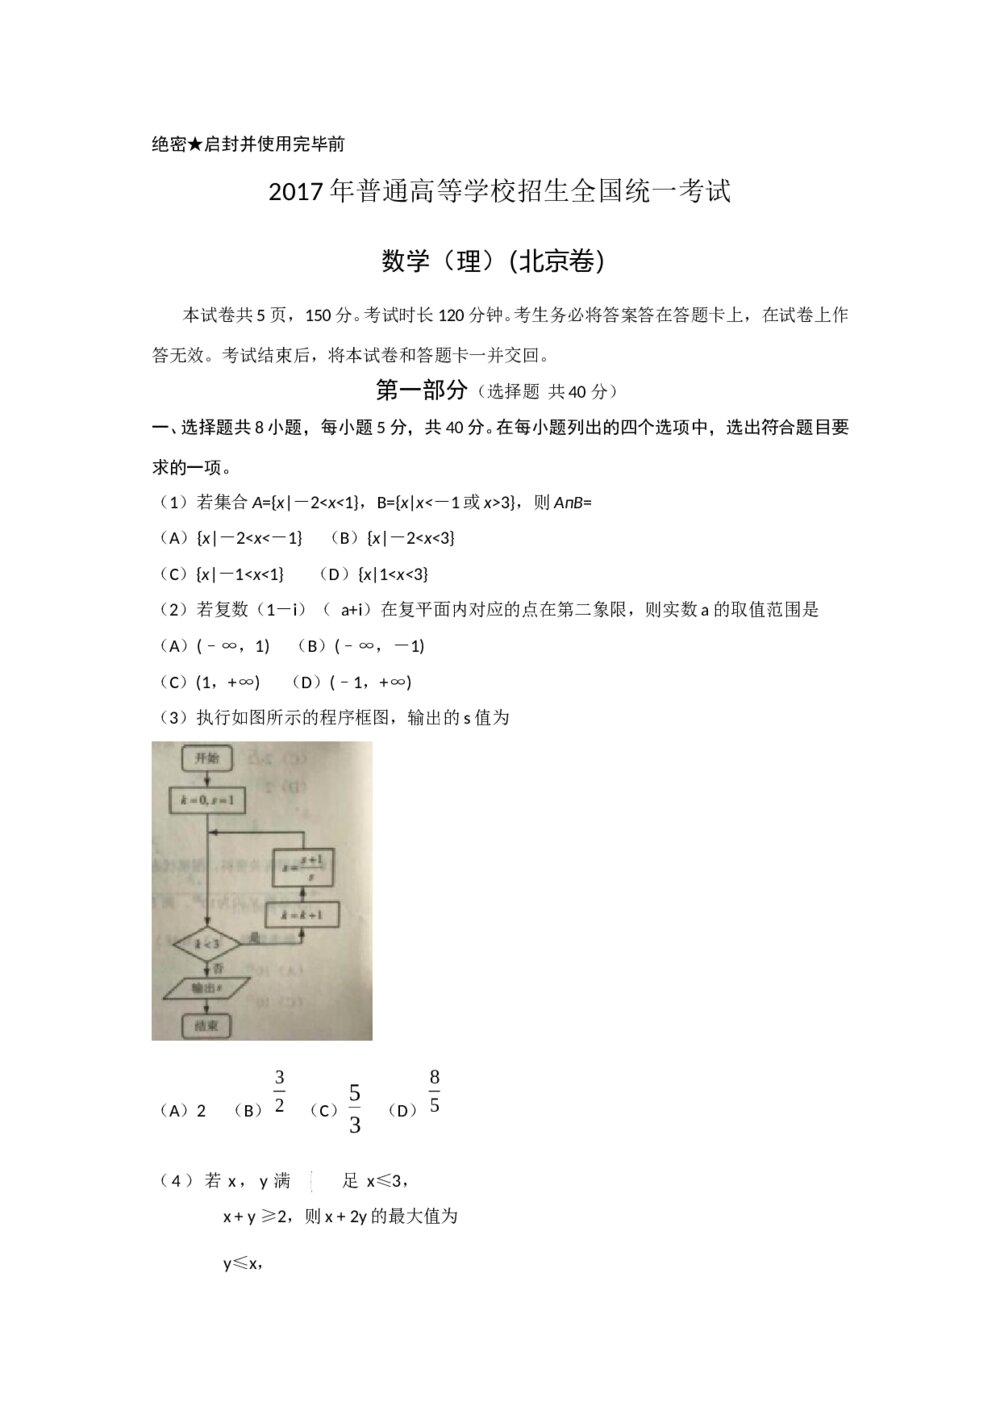 2017年北京高考数学(理科)试题试卷+答案(word版)1